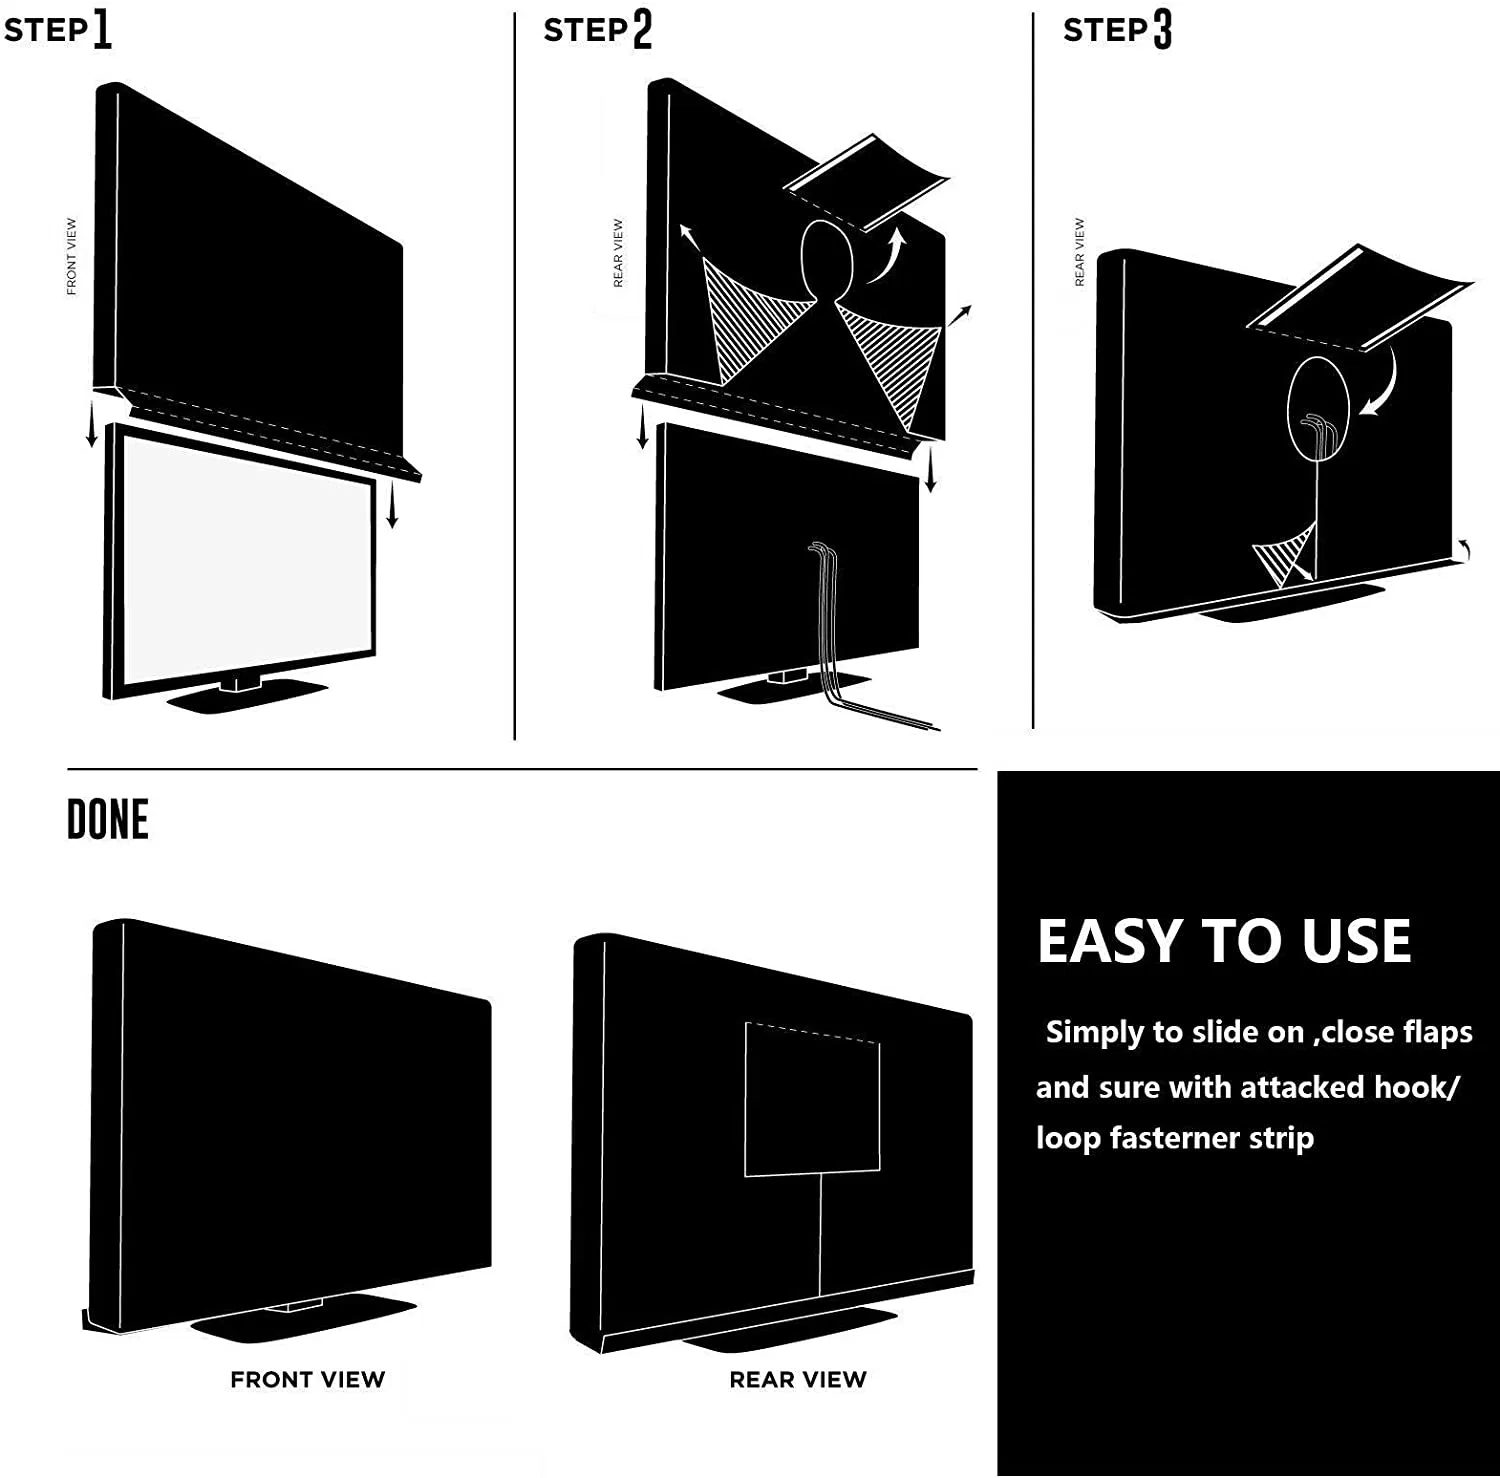 Heavy Duty Transparent TV Cover Black for Indoor/Outdoor Heat Resistant Weatherproof Dustproof Anti UV